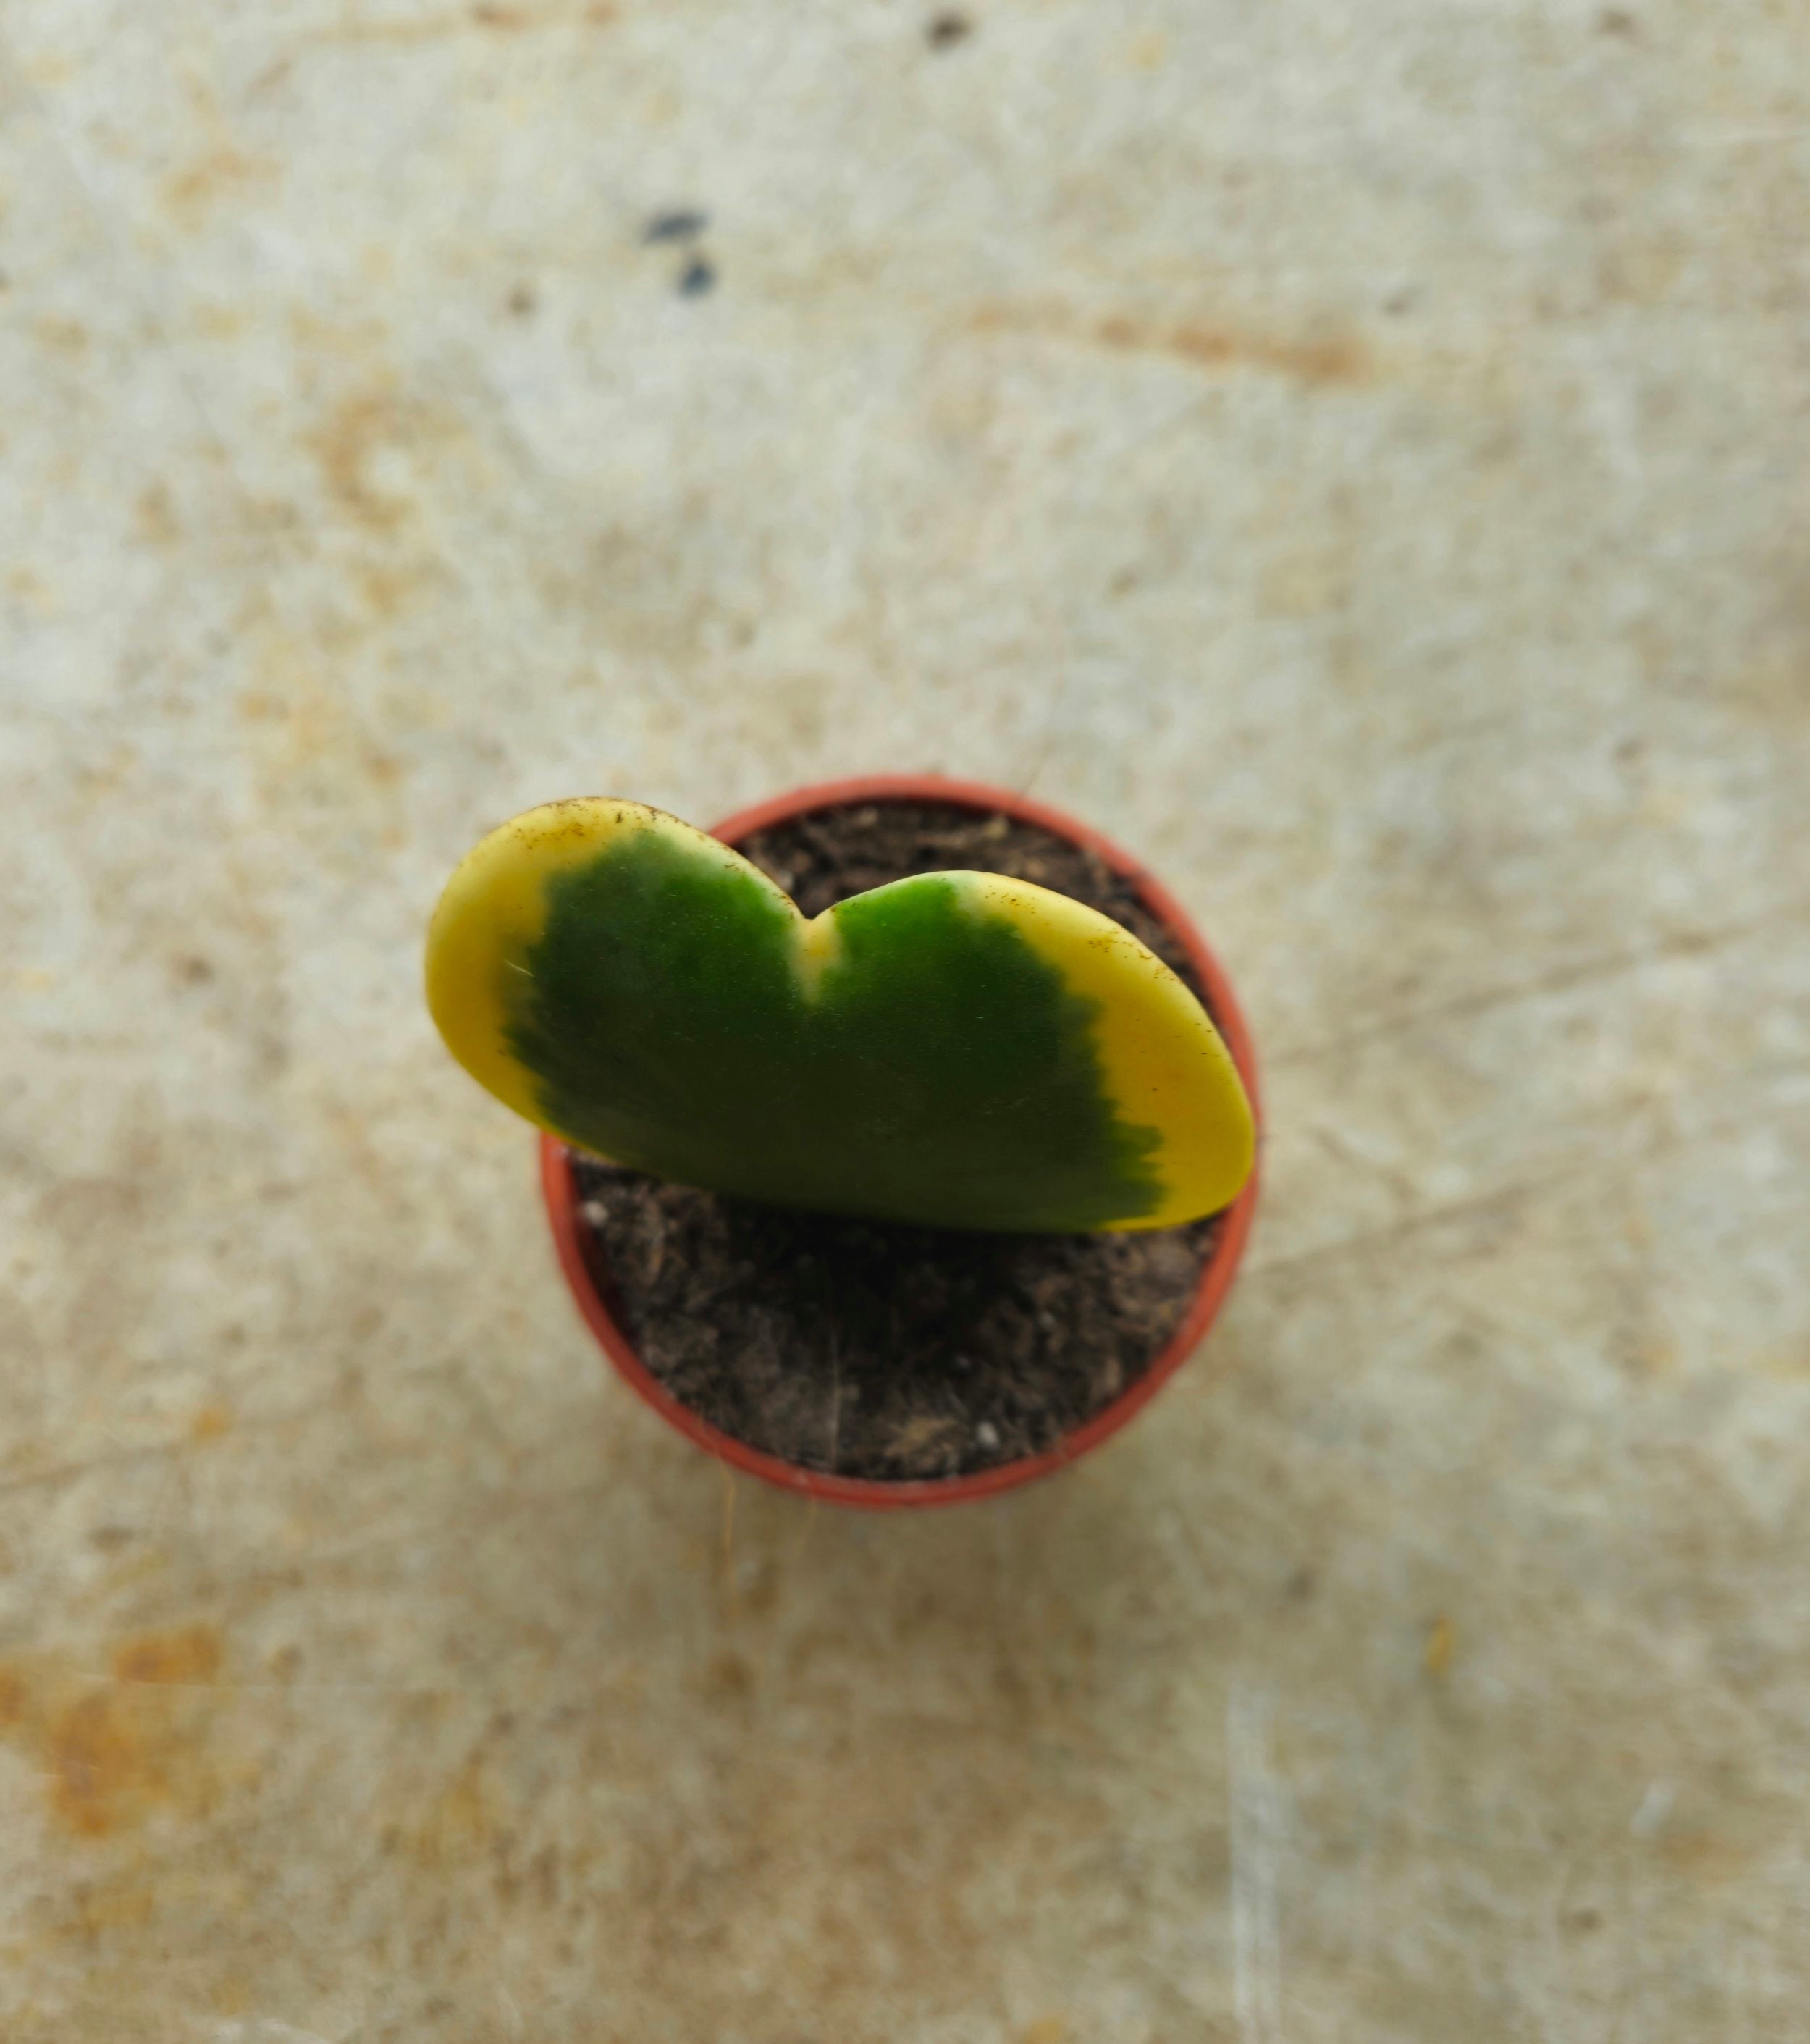 Hoya kerrii (Sweetheart plant) 2 varieties